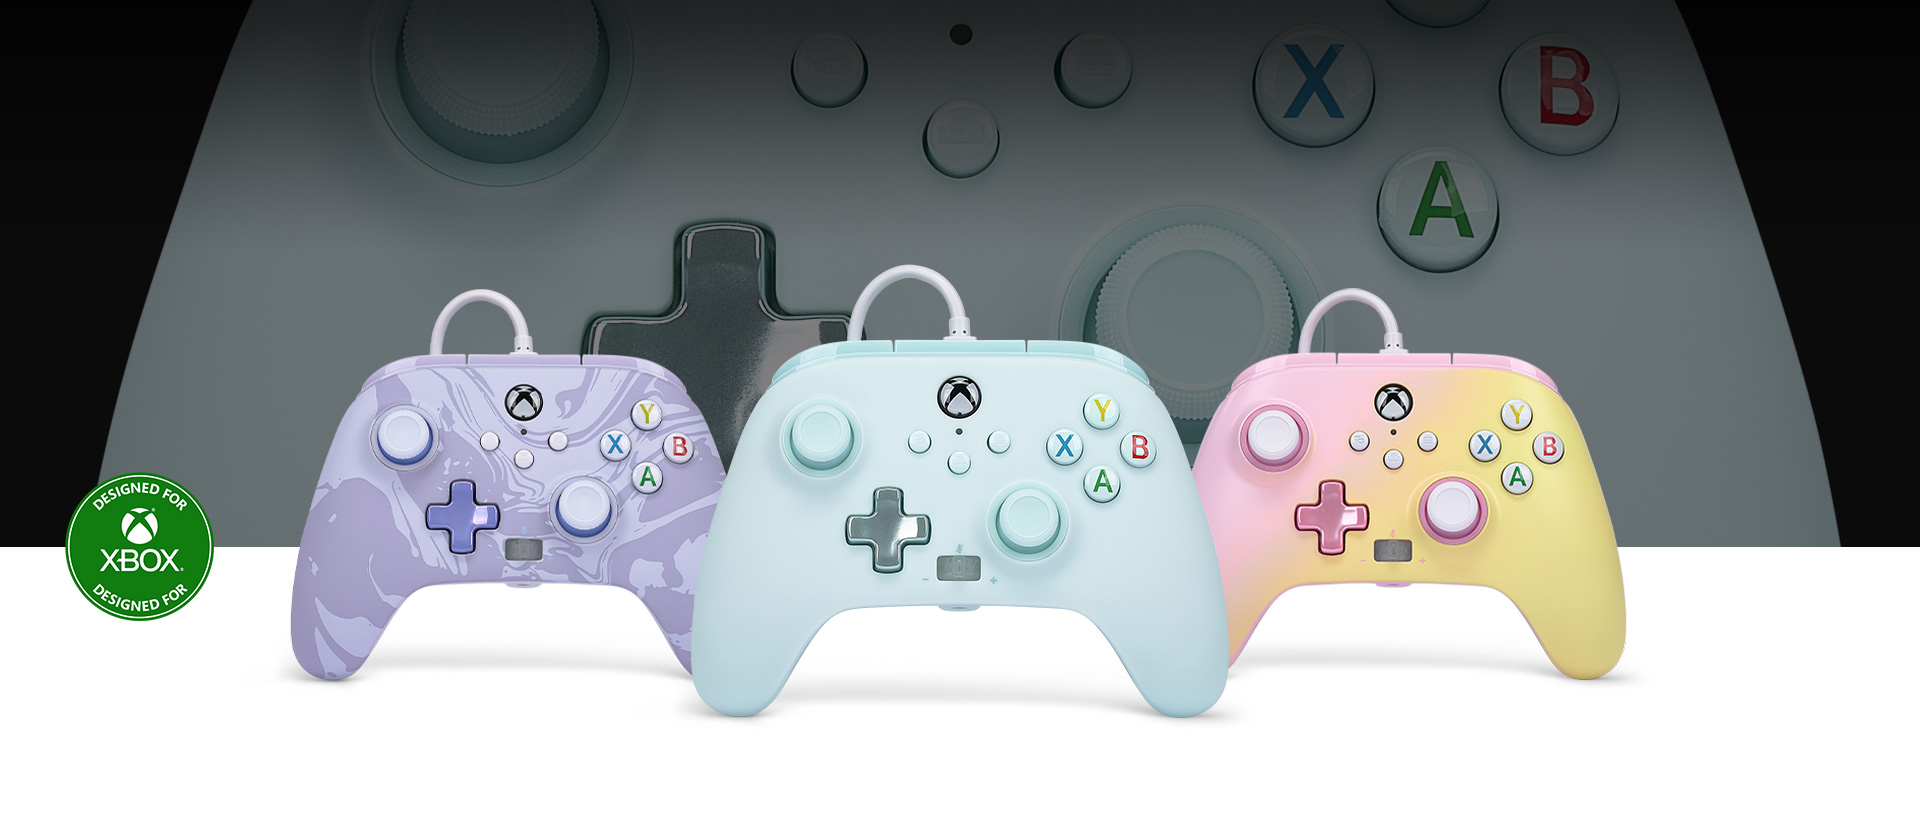 Ontworpen voor Xbox-logo, Cotton Candy Blue-controller vooraan met de Purple Camo- en Pink Lemonade-controllers ernaast